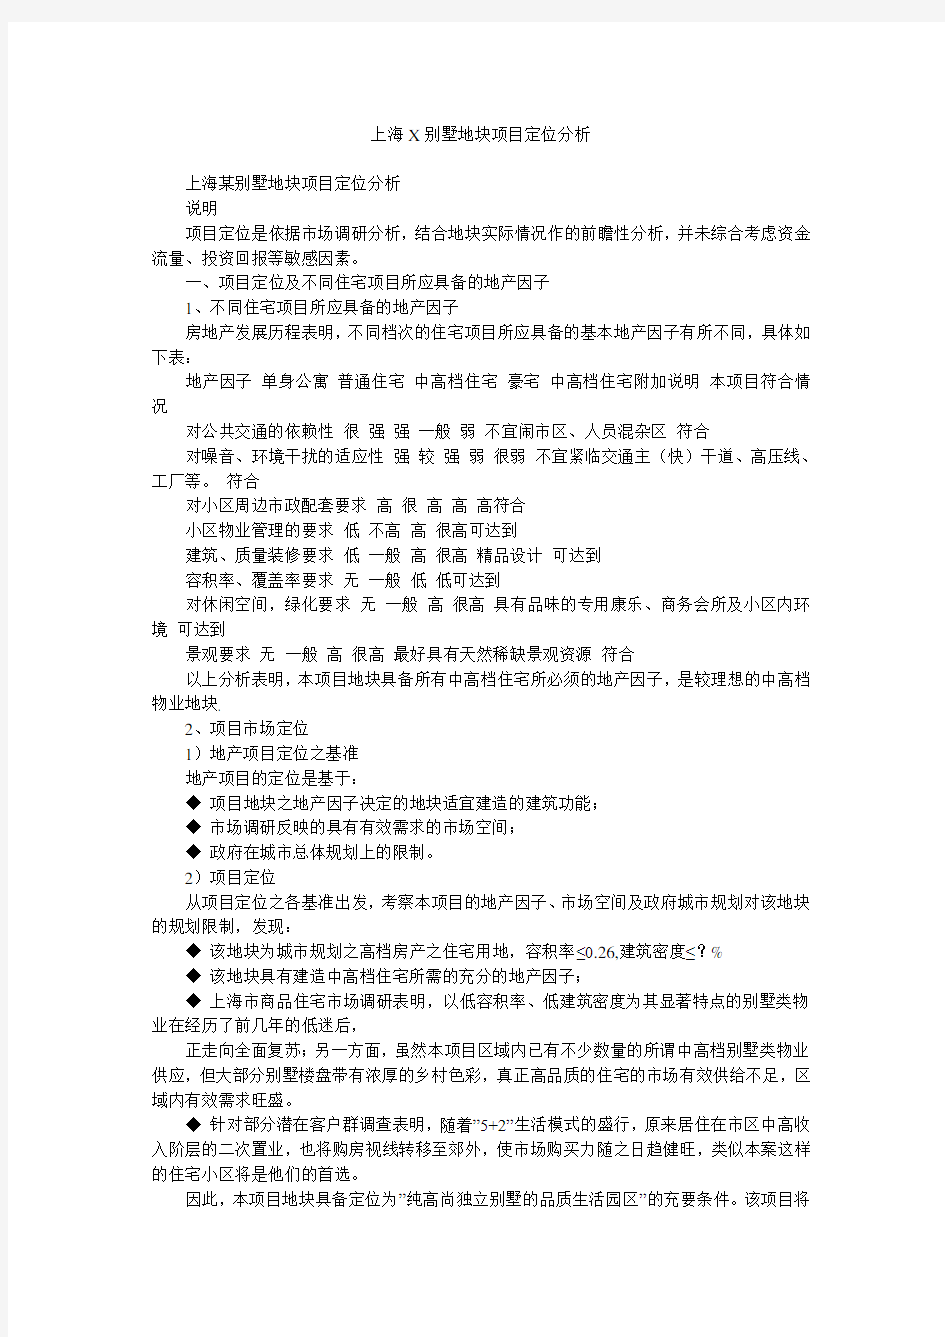 上海X别墅地块项目定位分析